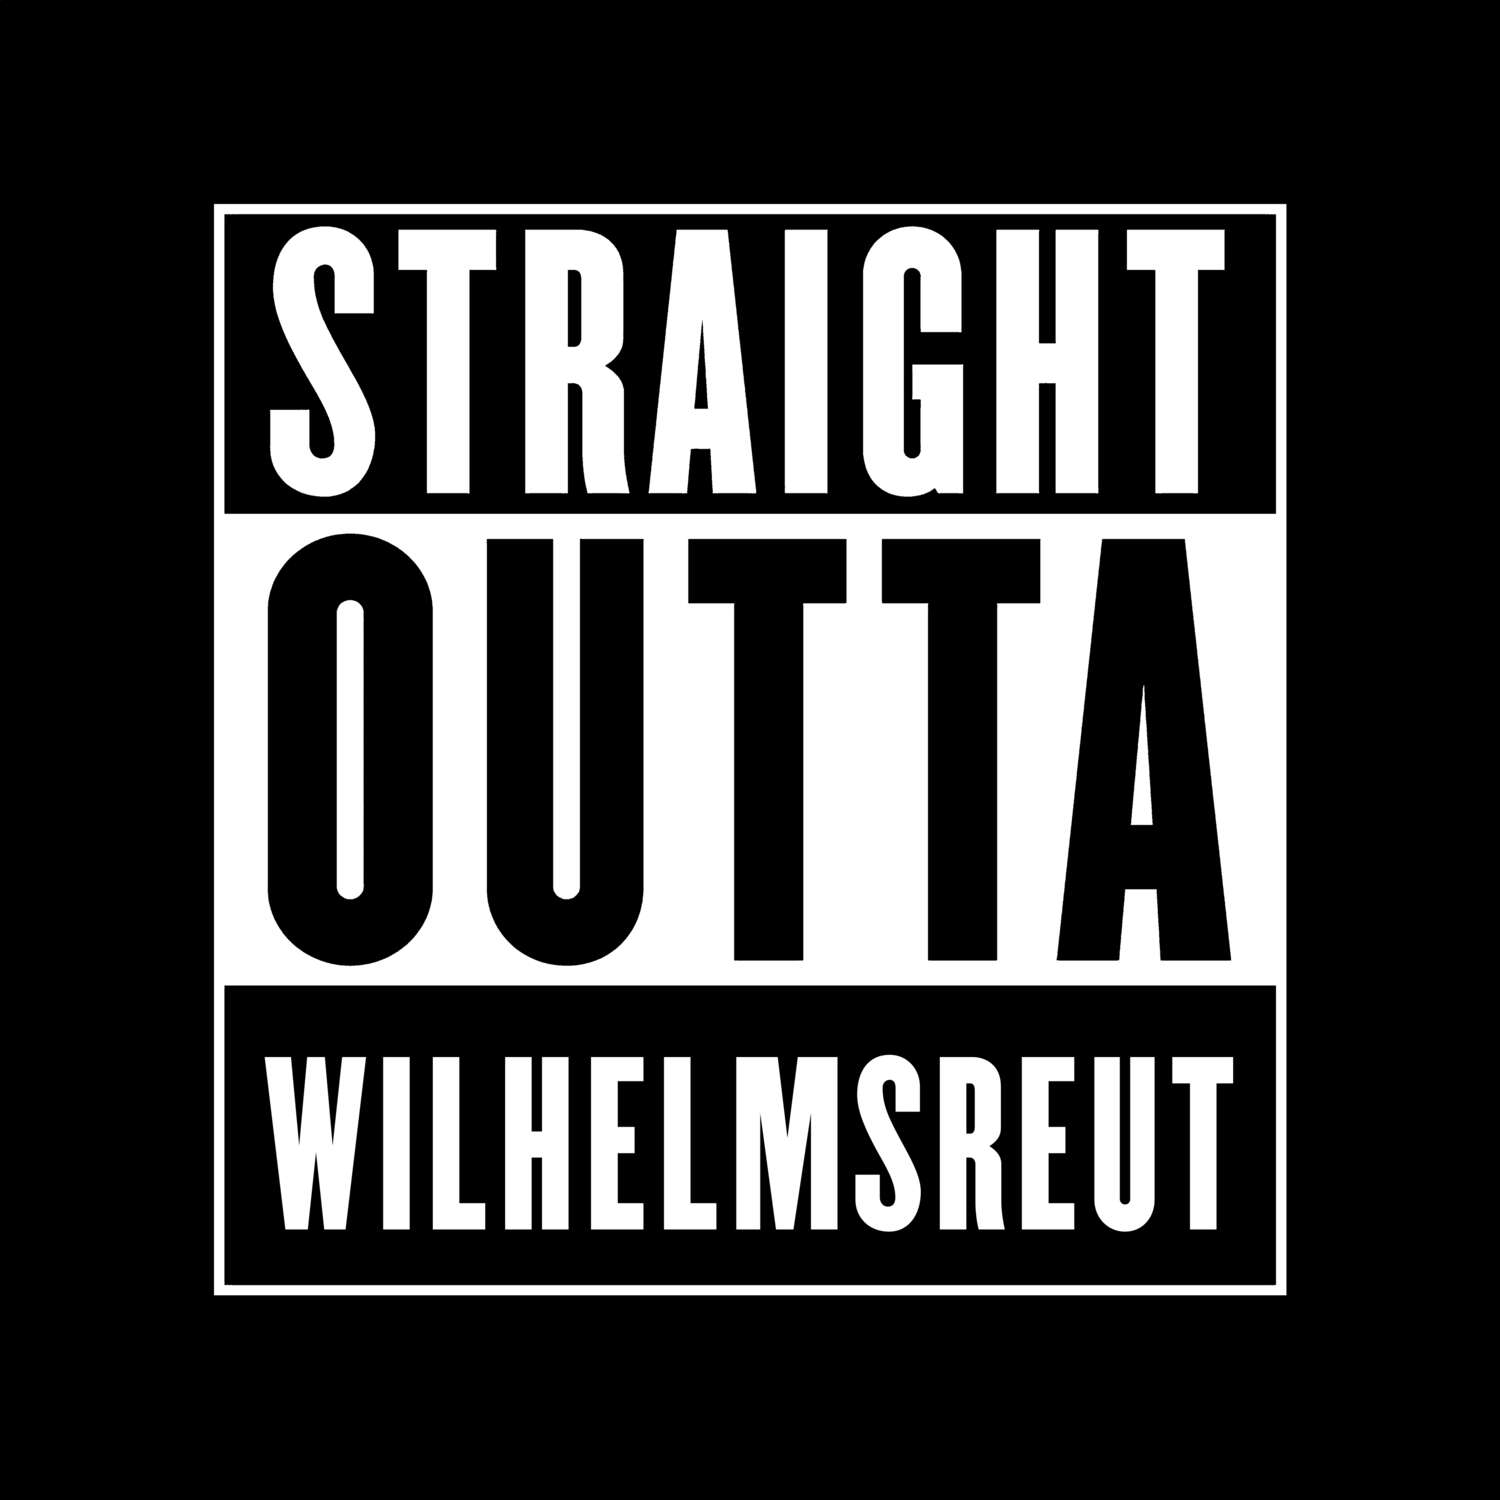 Wilhelmsreut T-Shirt »Straight Outta«